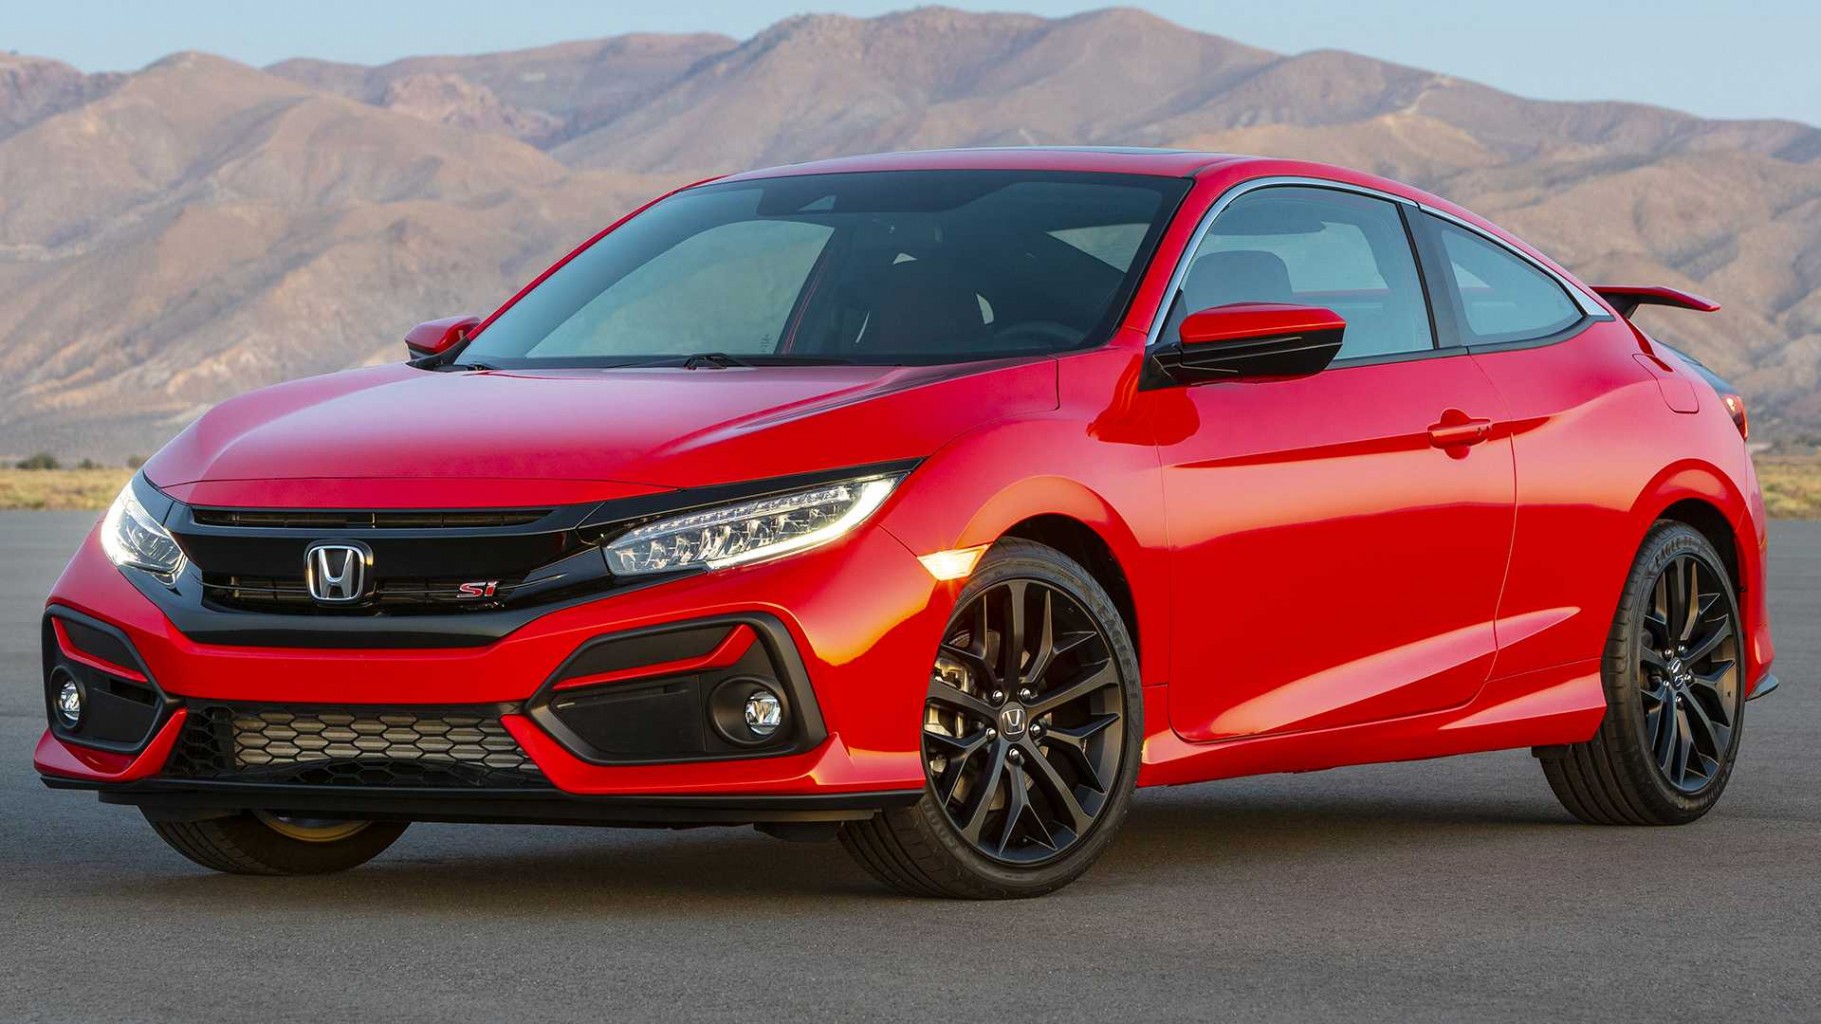 Honda descontinuará una serie de modelos de bajas ventas